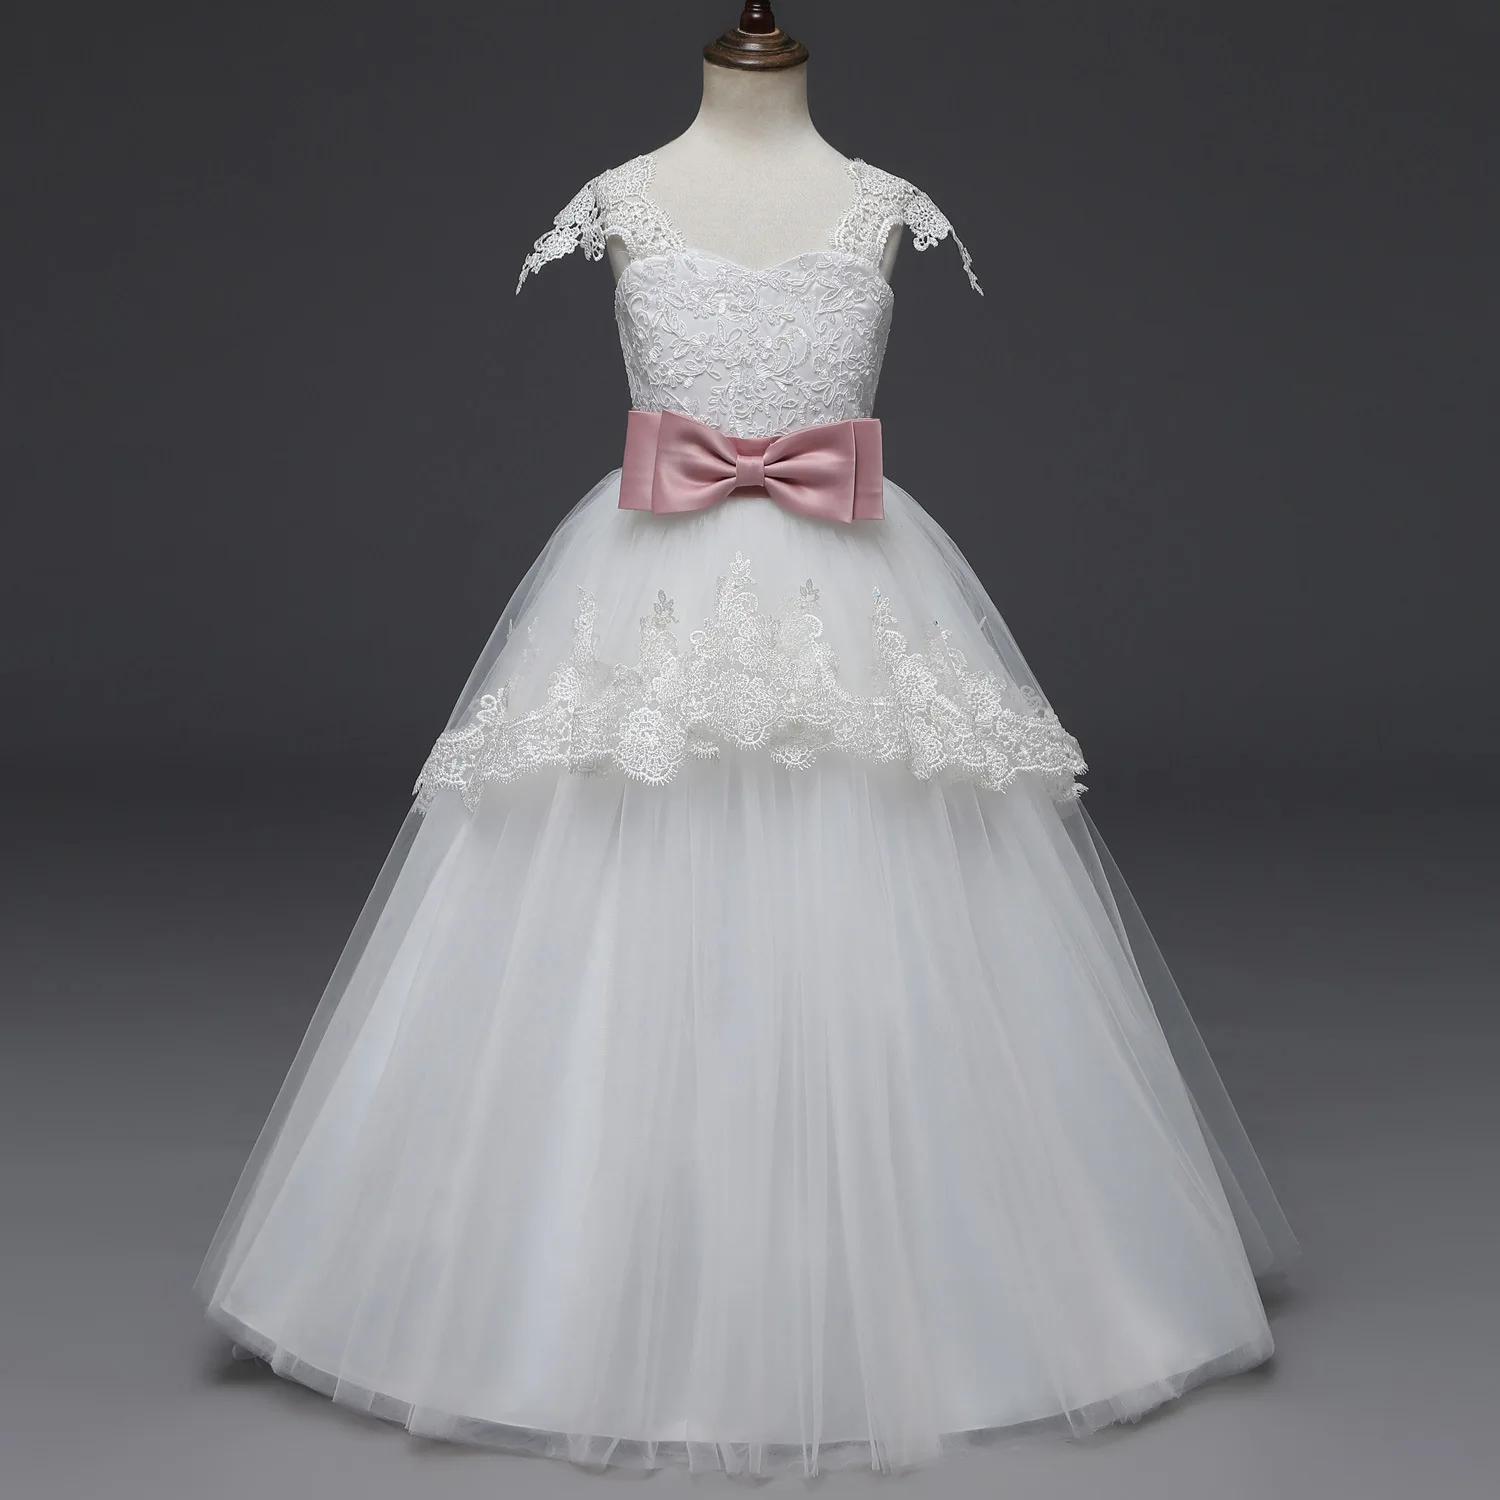 Длинное белое бальное платье принцессы с V-образным вырезом платья для девочек